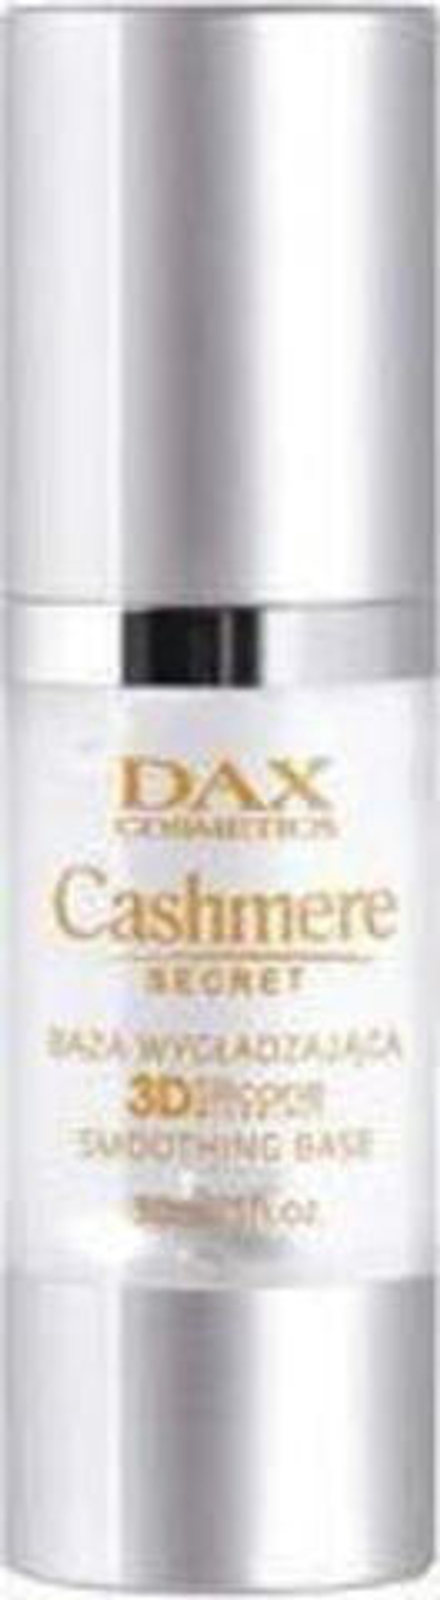 DAX Cashmere Secret Baza wygładzająca 30 ml